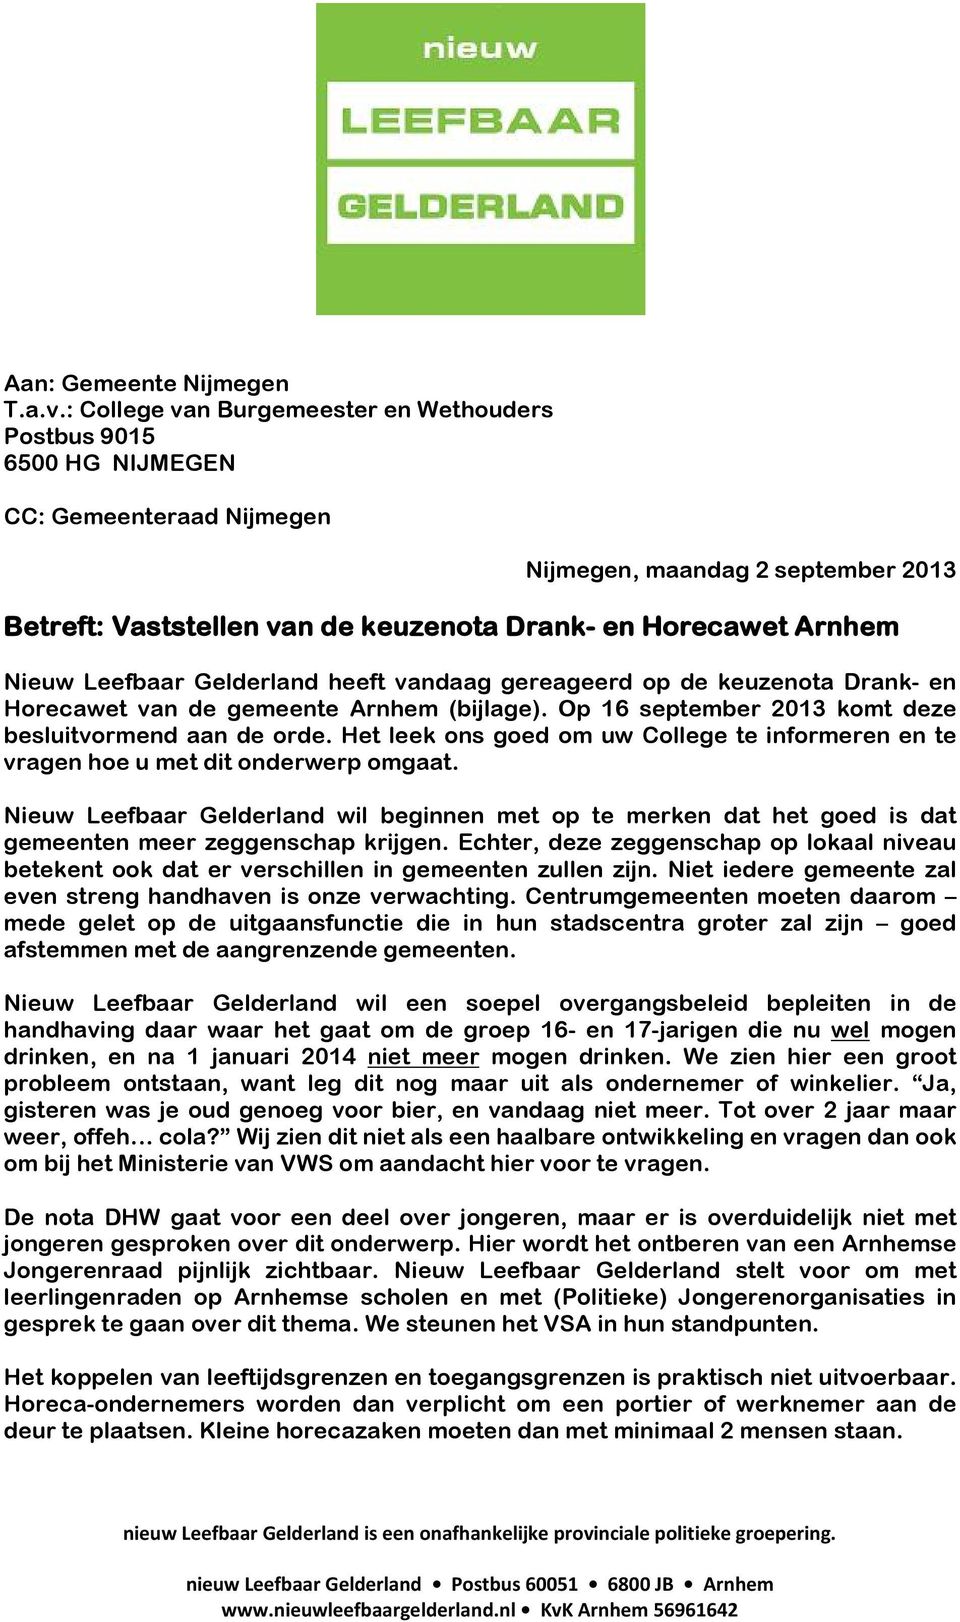 Nieuw Leefbaar Gelderland heeft vandaag gereageerd op de keuzenota Drank- en Horecawet van de gemeente Arnhem (bijlage). Op 16 september 2013 komt deze besluitvormend aan de orde.